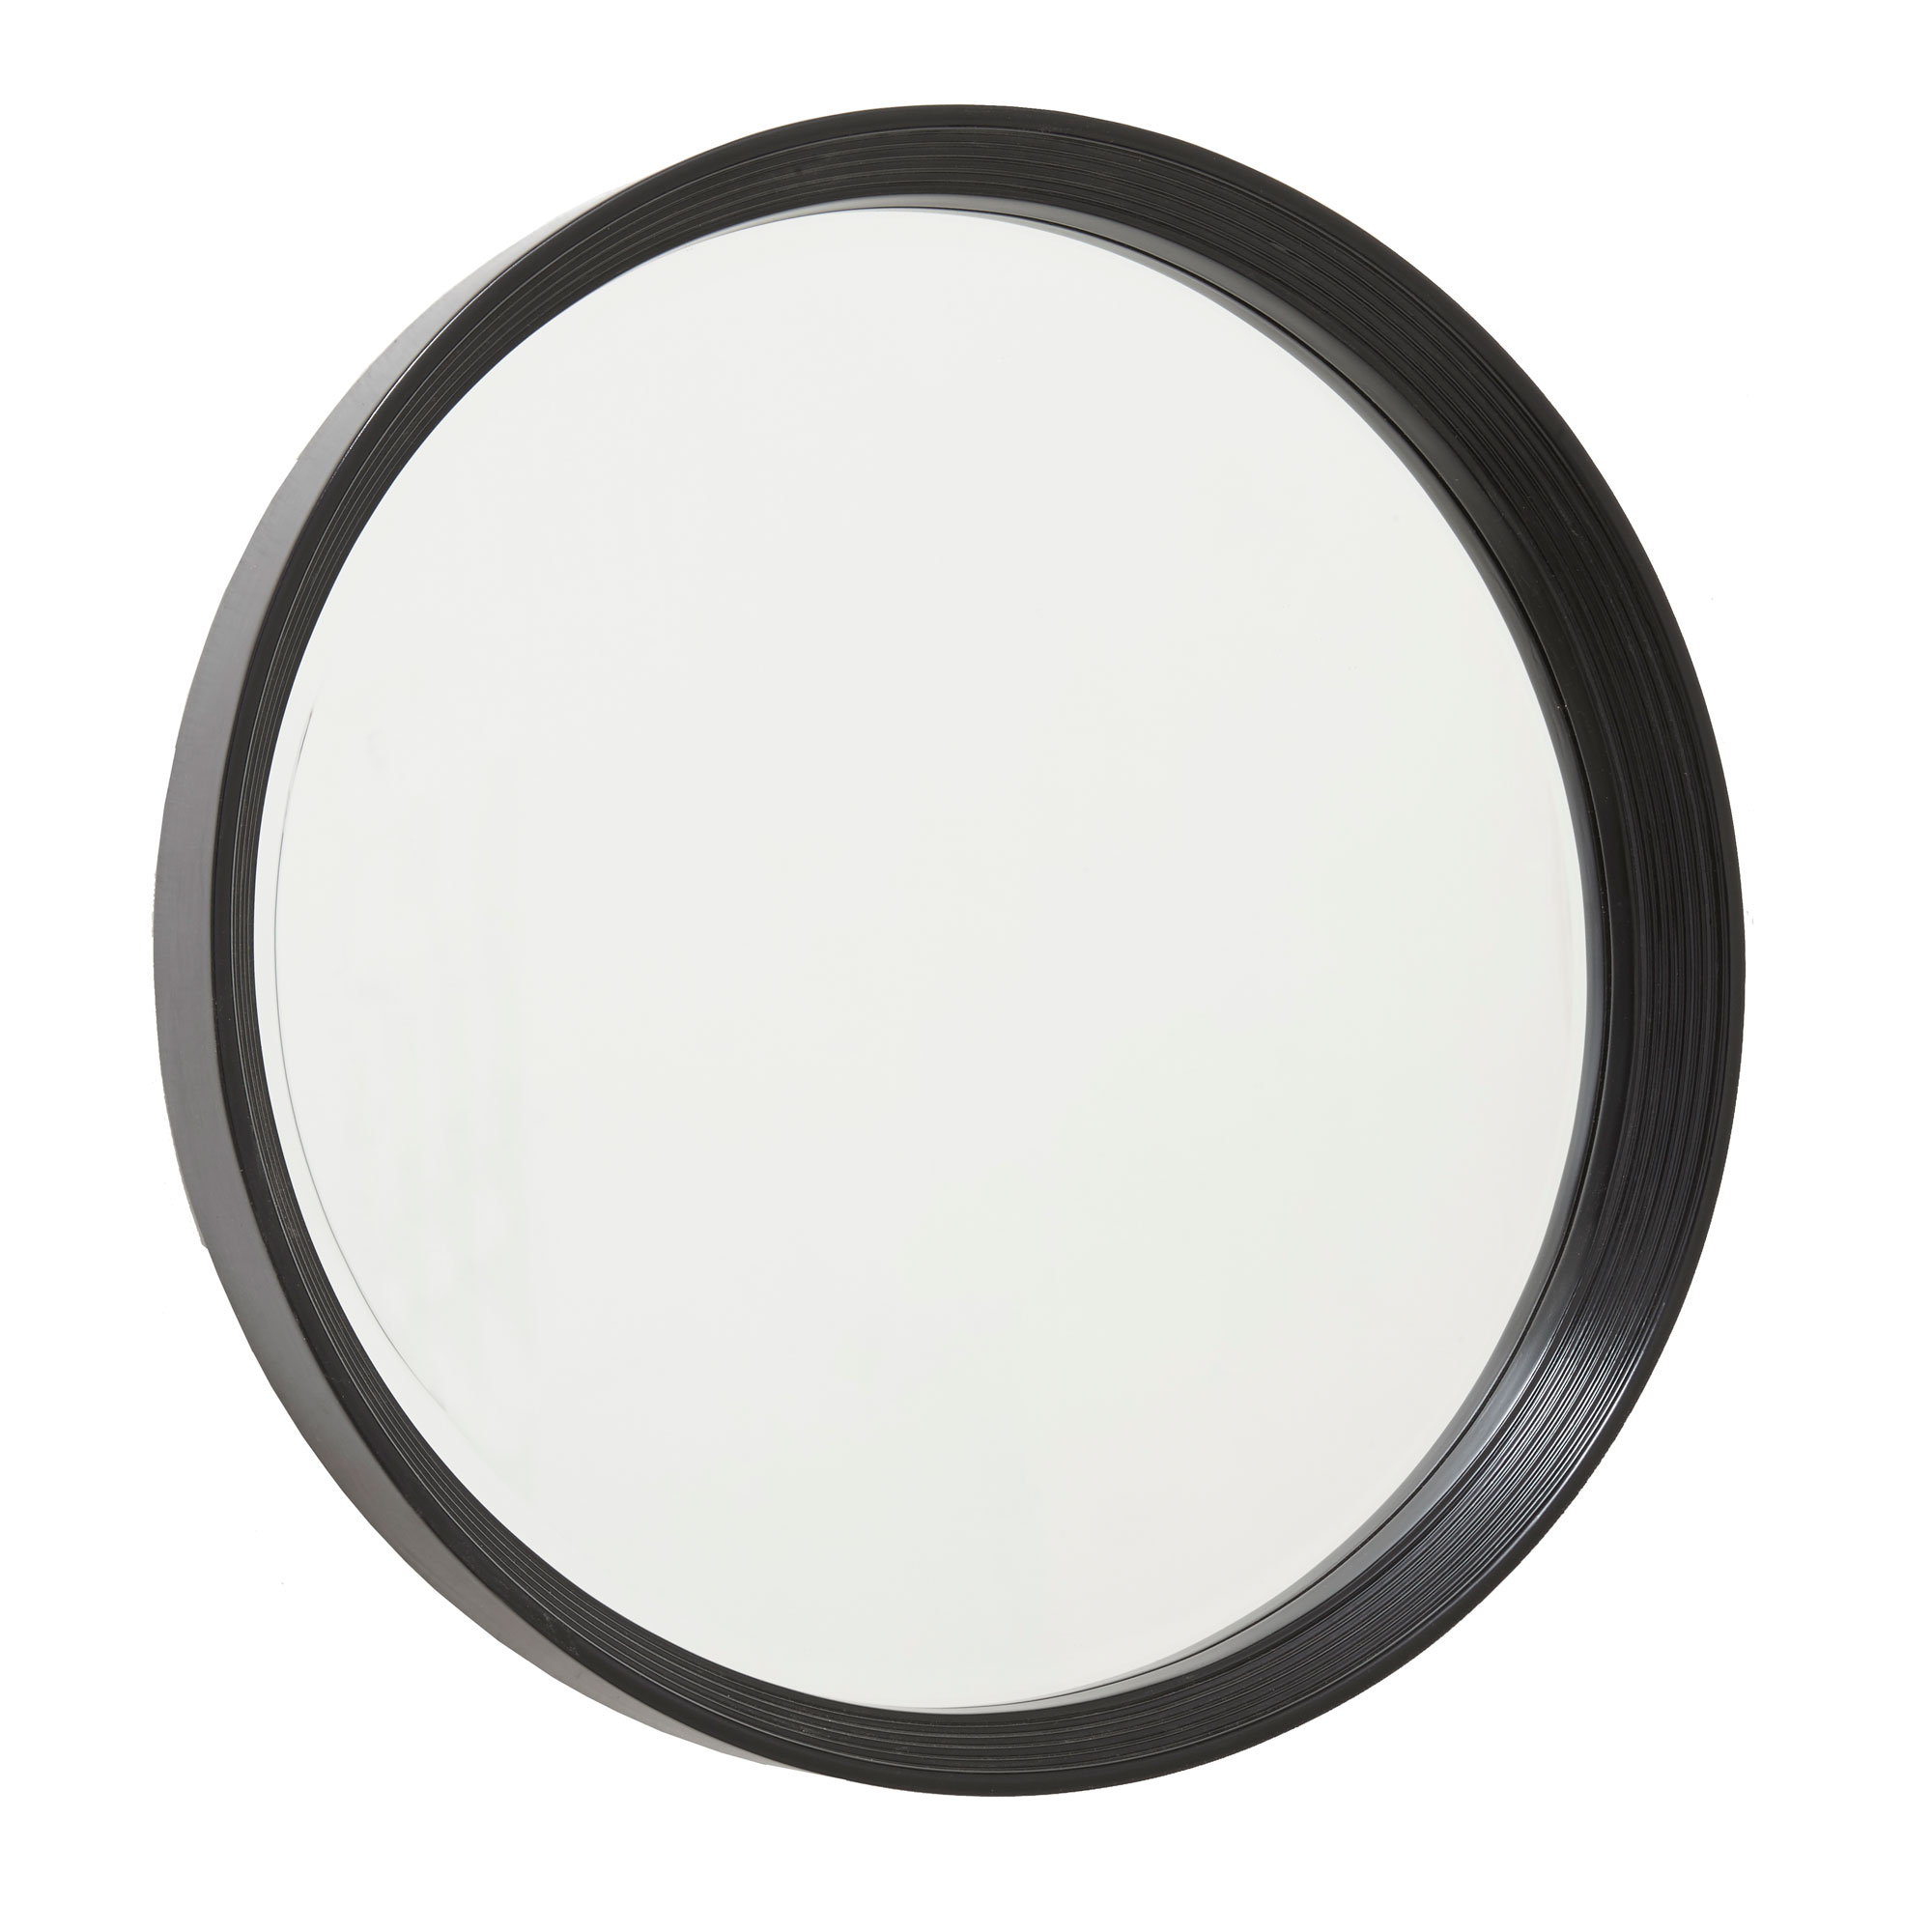 Galicia Mirror 7038 semi gloss black